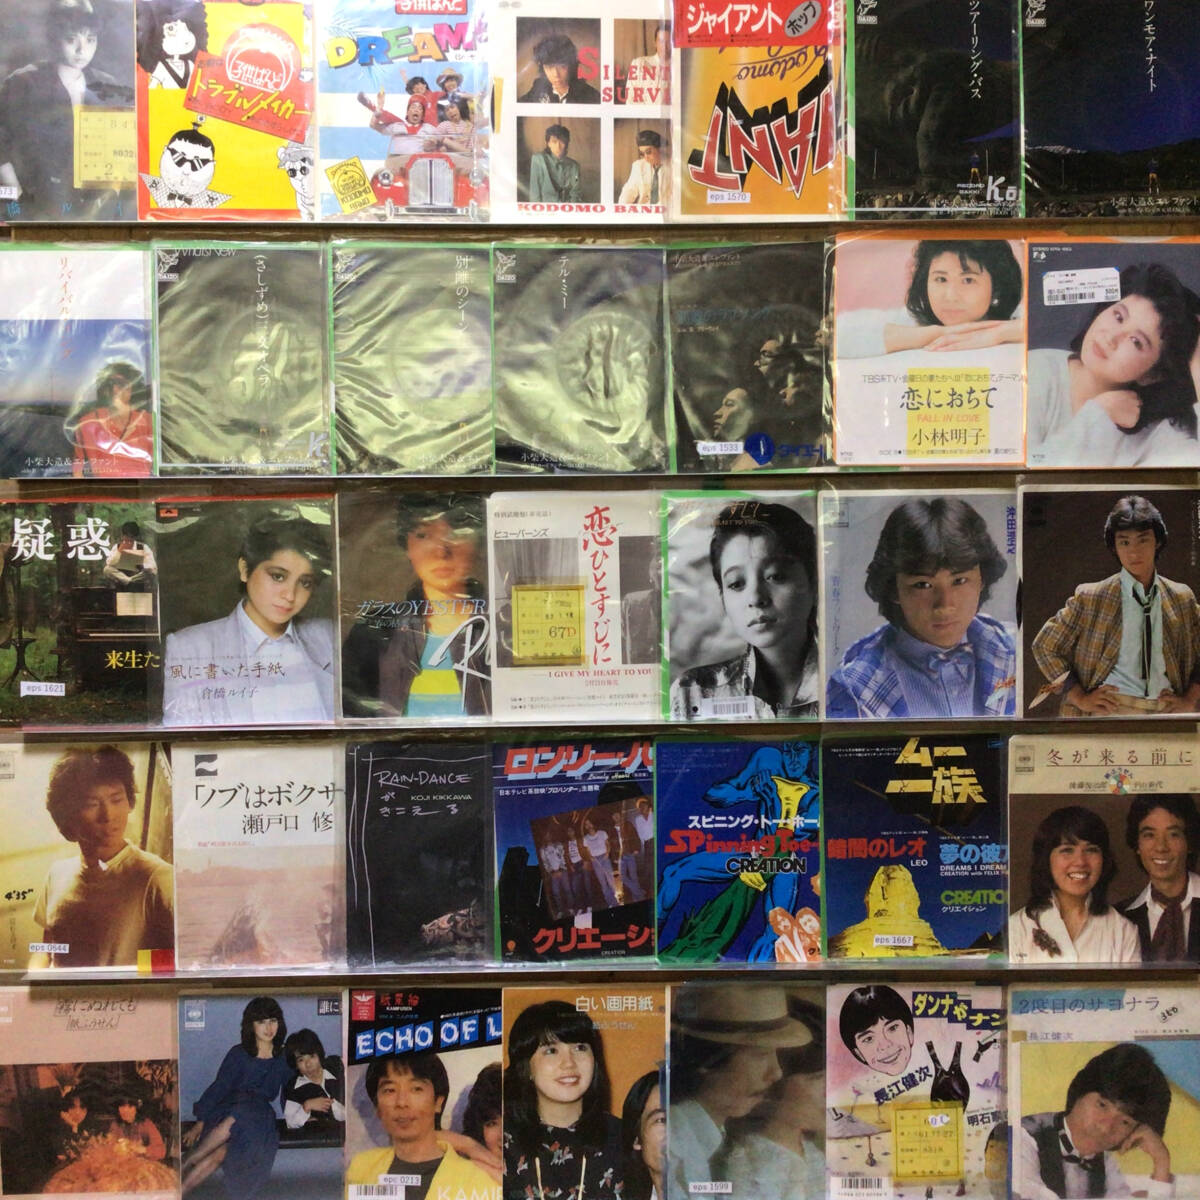 1 иен старт Японская музыка много EP пончики запись примерно 150 листов эта 6337 картон 1 коробка [ Sagawa Express departure оплата. ]